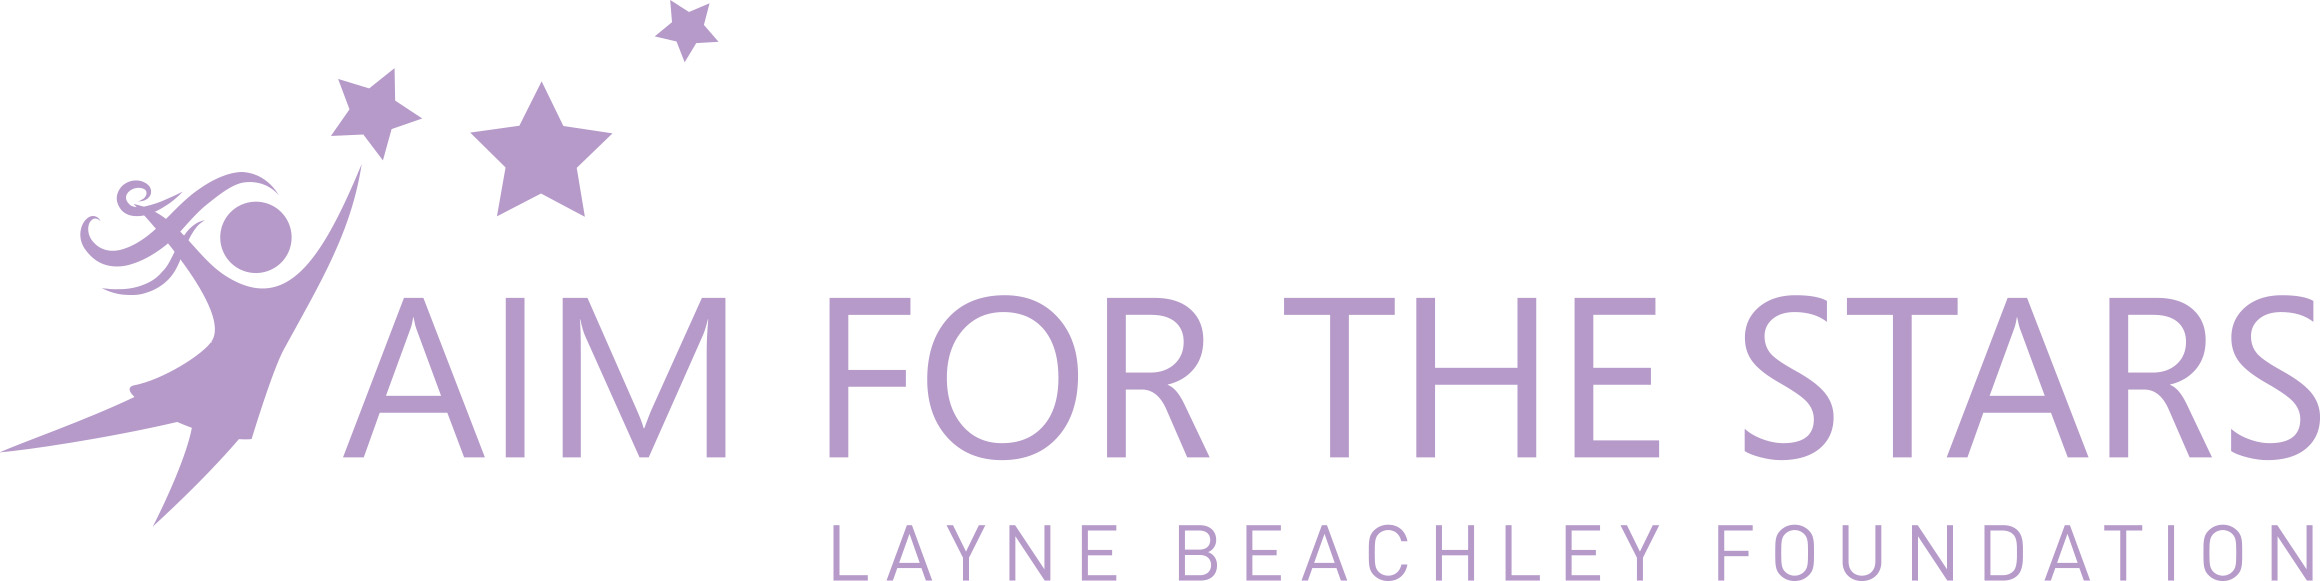 Layne Beachley Aim for the Stars Foundation logo